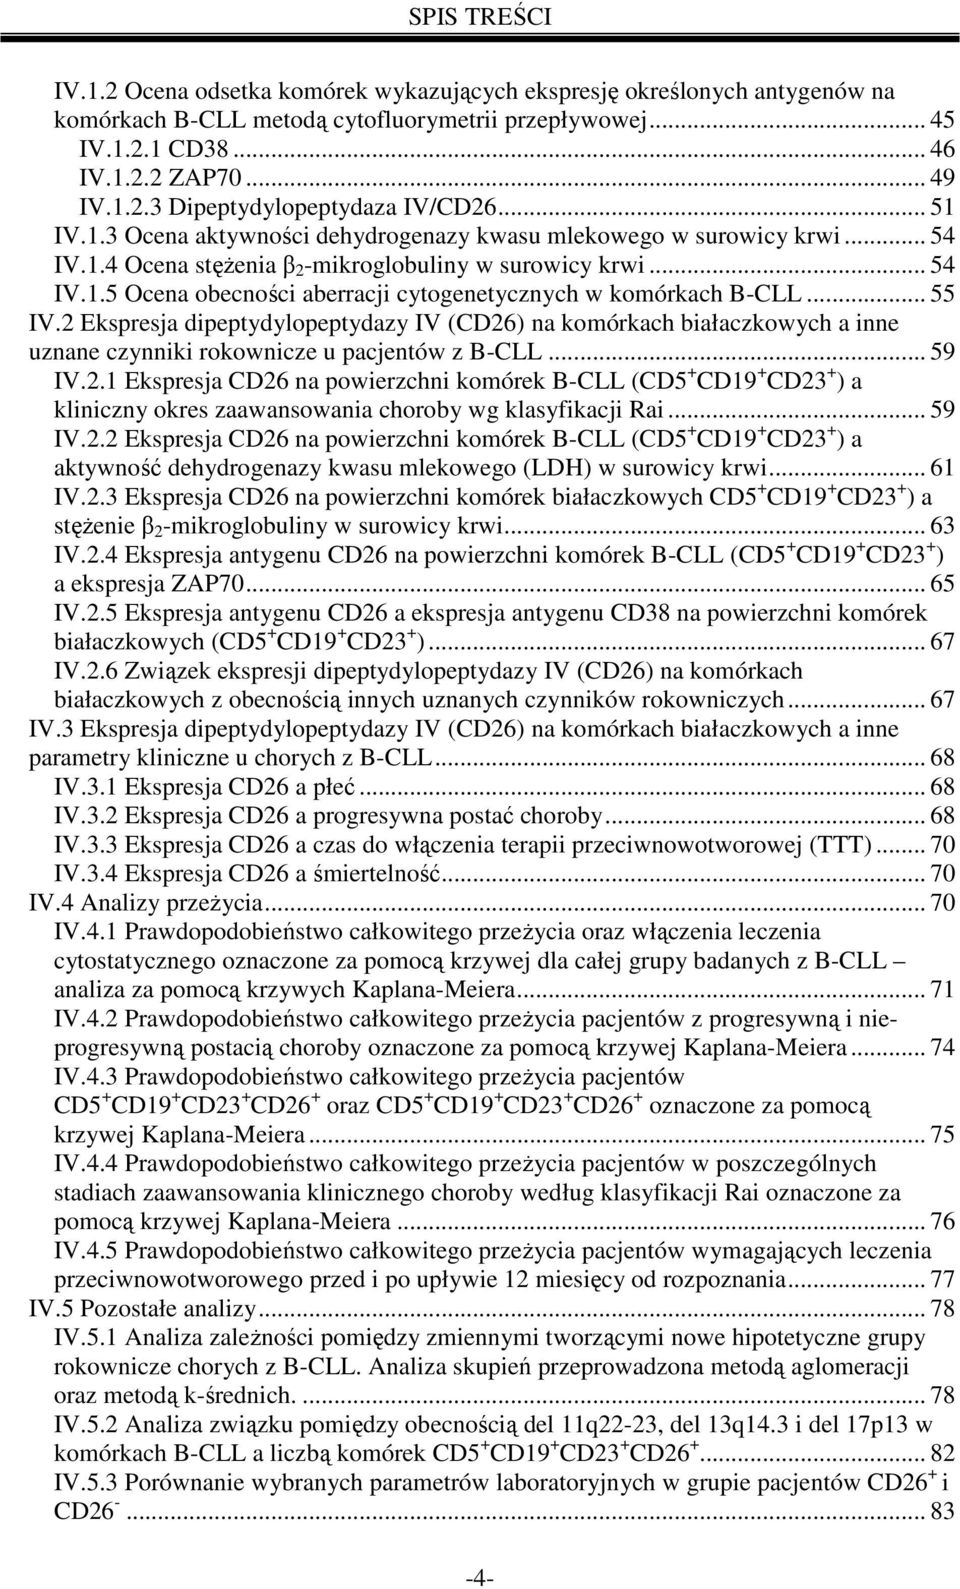 .. 55 IV.2 Ekspresja dipeptydylopeptydazy IV (CD26) na komórkach białaczkowych a inne uznane czynniki rokownicze u pacjentów z B-CLL... 59 IV.2.1 Ekspresja CD26 na powierzchni komórek B-CLL (CD5 + CD19 + CD23 + ) a kliniczny okres zaawansowania choroby wg klasyfikacji Rai.